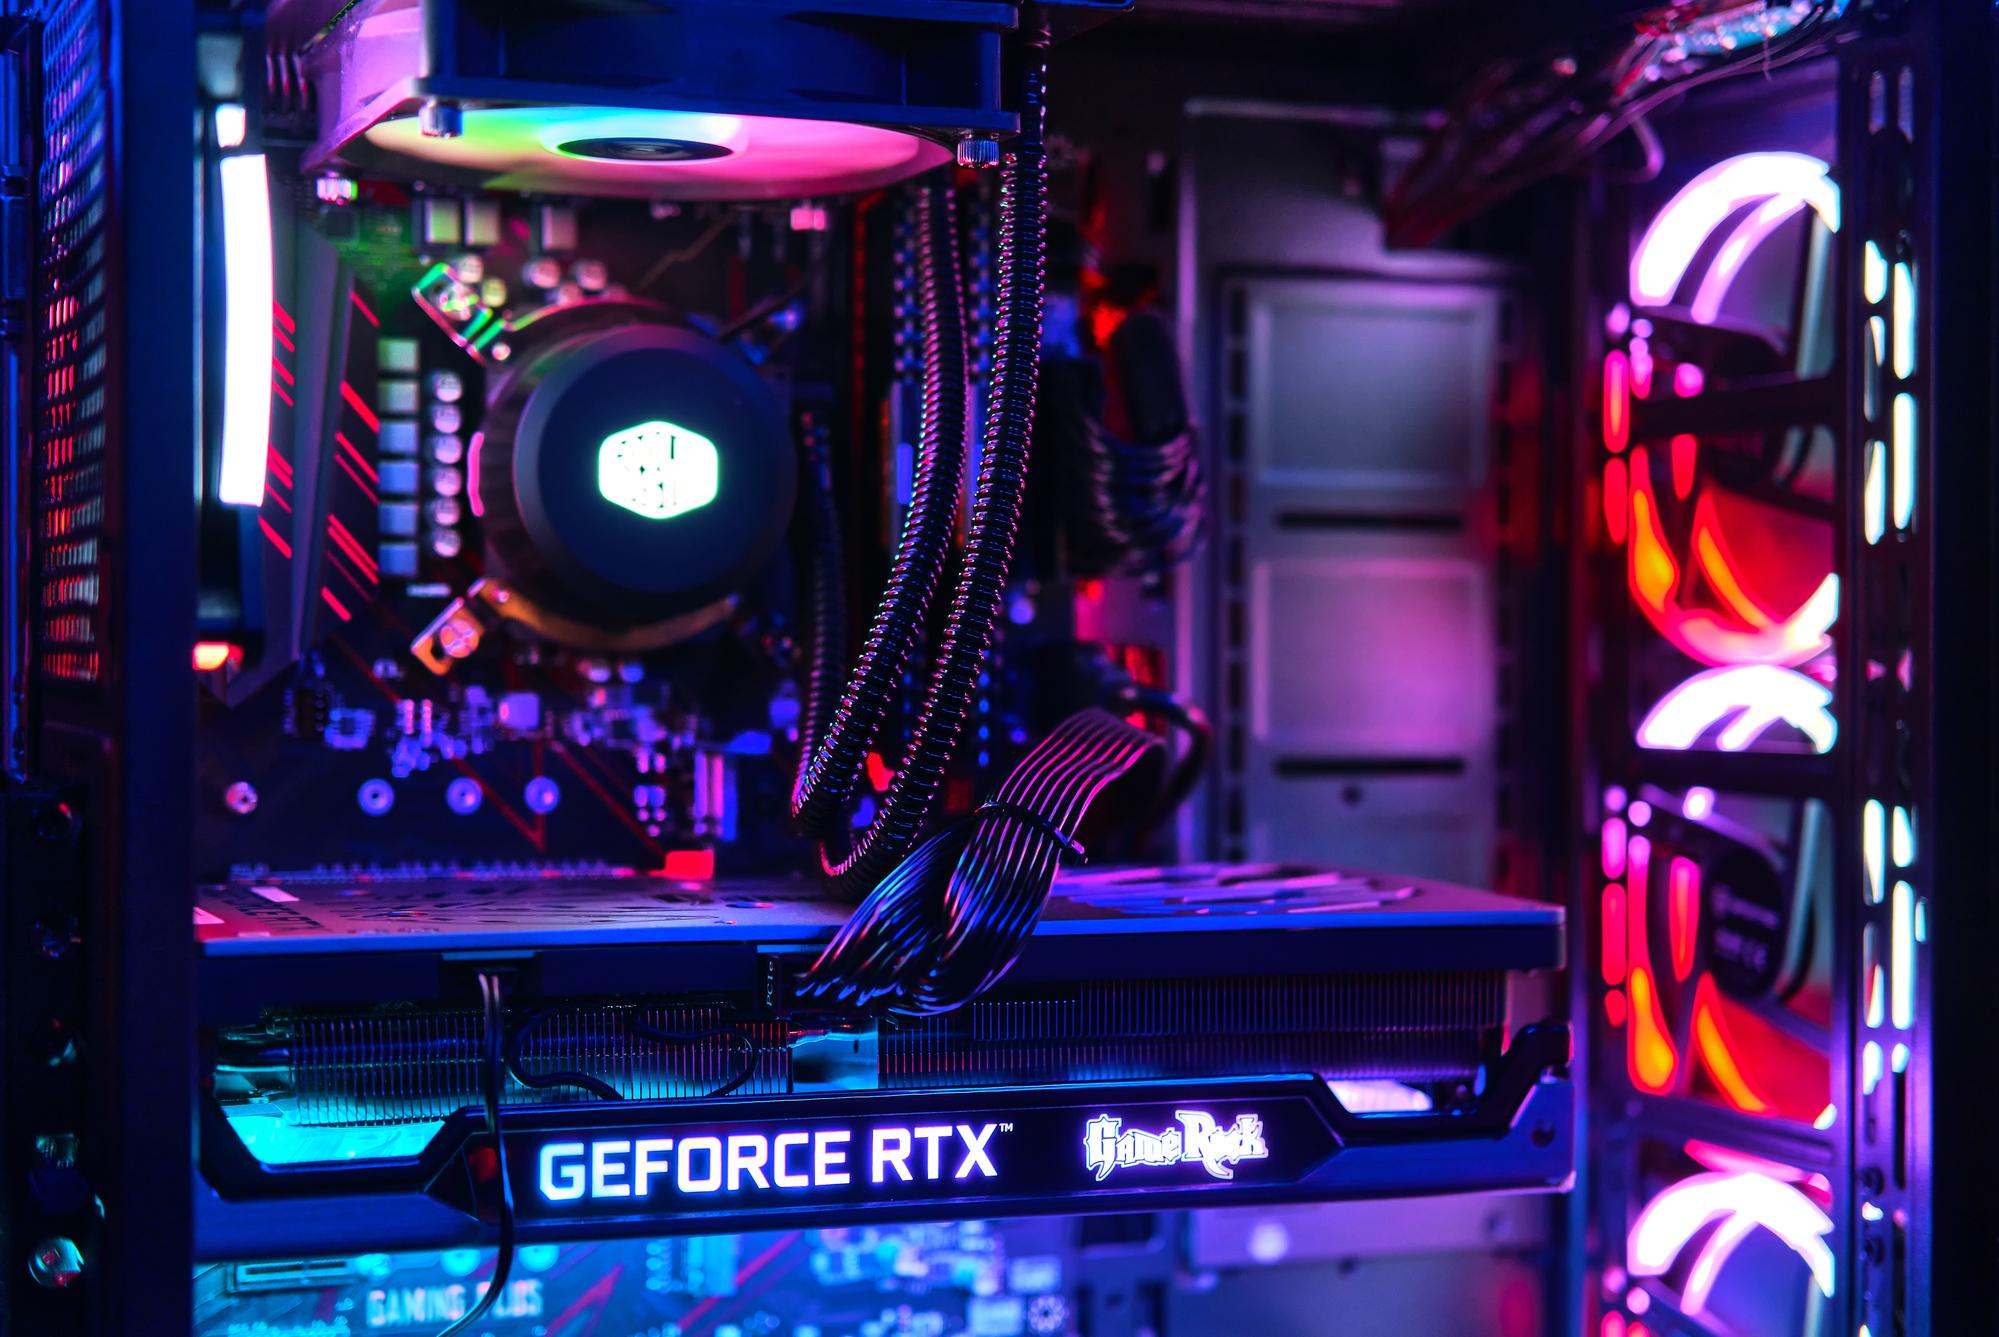 Eine GeForce RTX Grafikkarte von Nvidia in einem farbenfroh beleuchteten PC